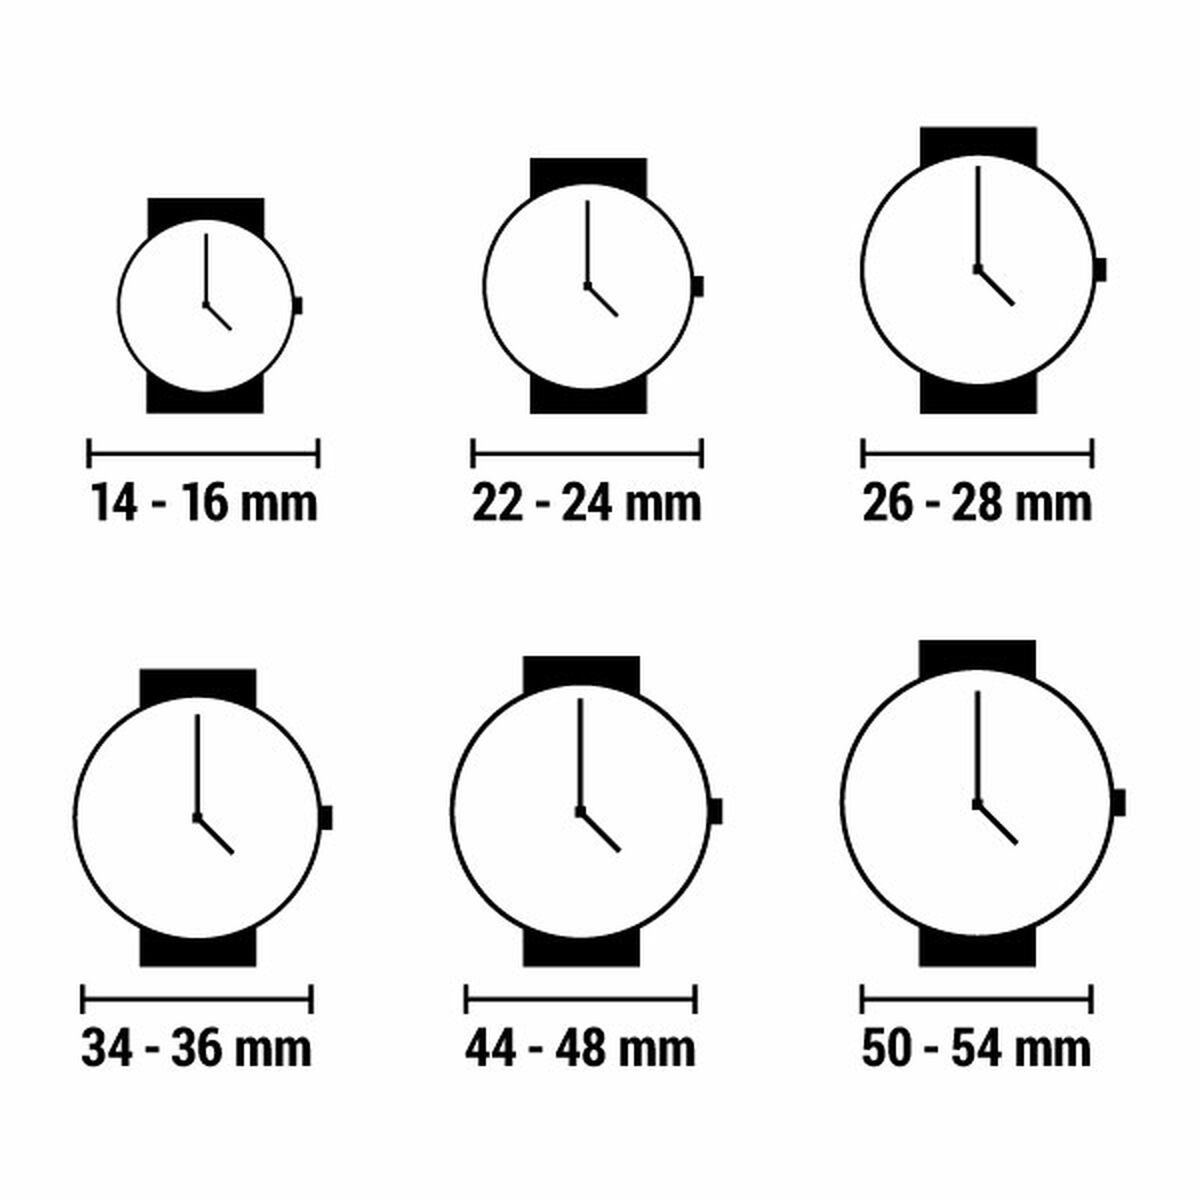 Horloge Dames Olivia Burton OB16TL14 (Ø 34 mm)